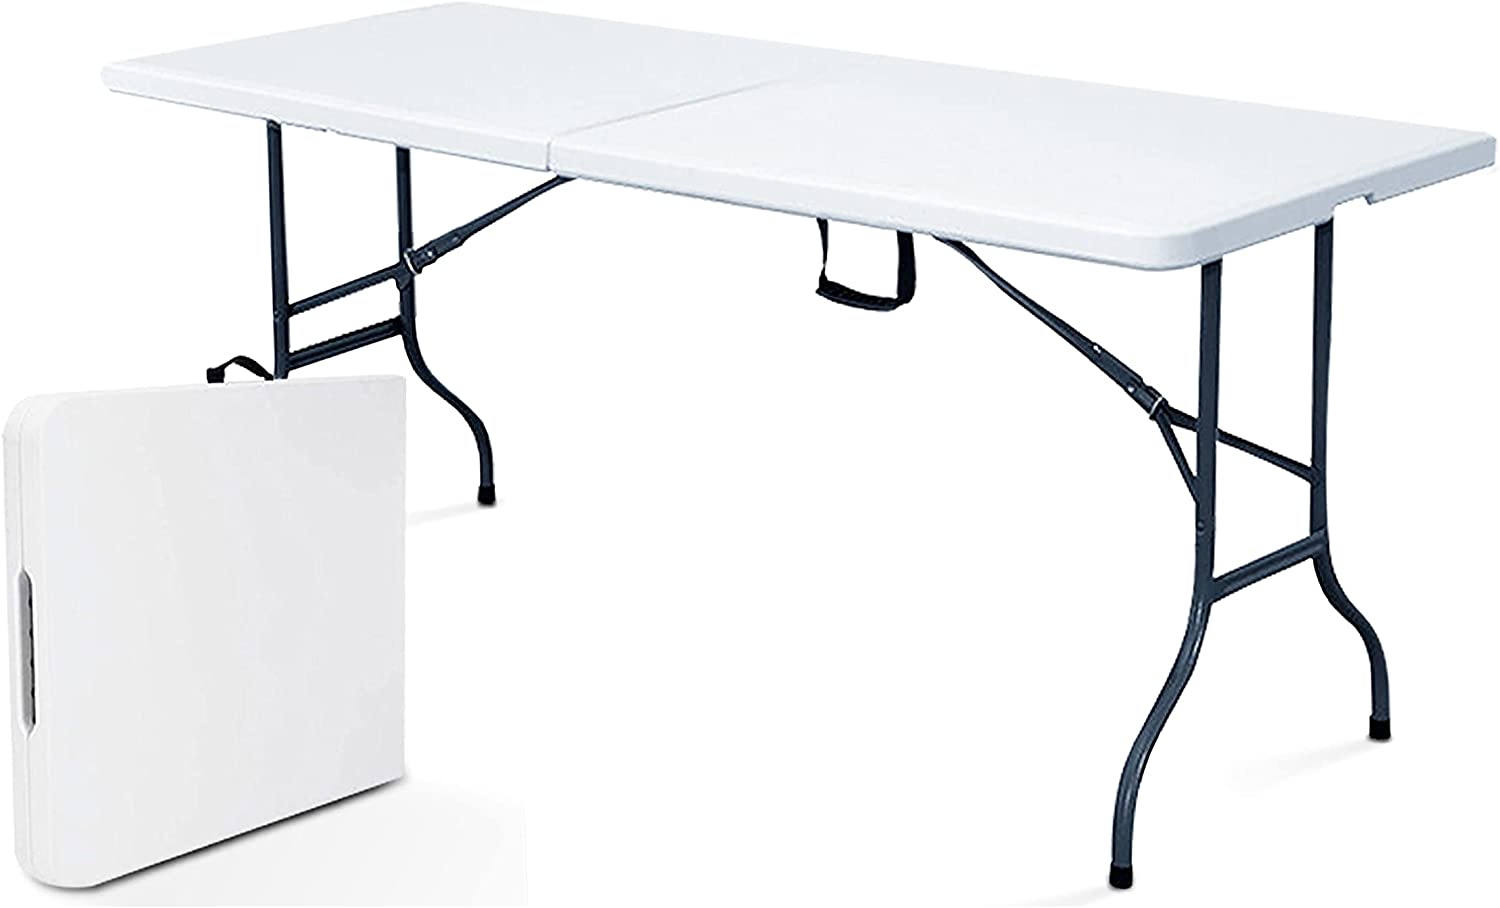 Table de Pique Nique Pliante Rekkem 180cm - Portable, Robuste et Spacieuse pour 8